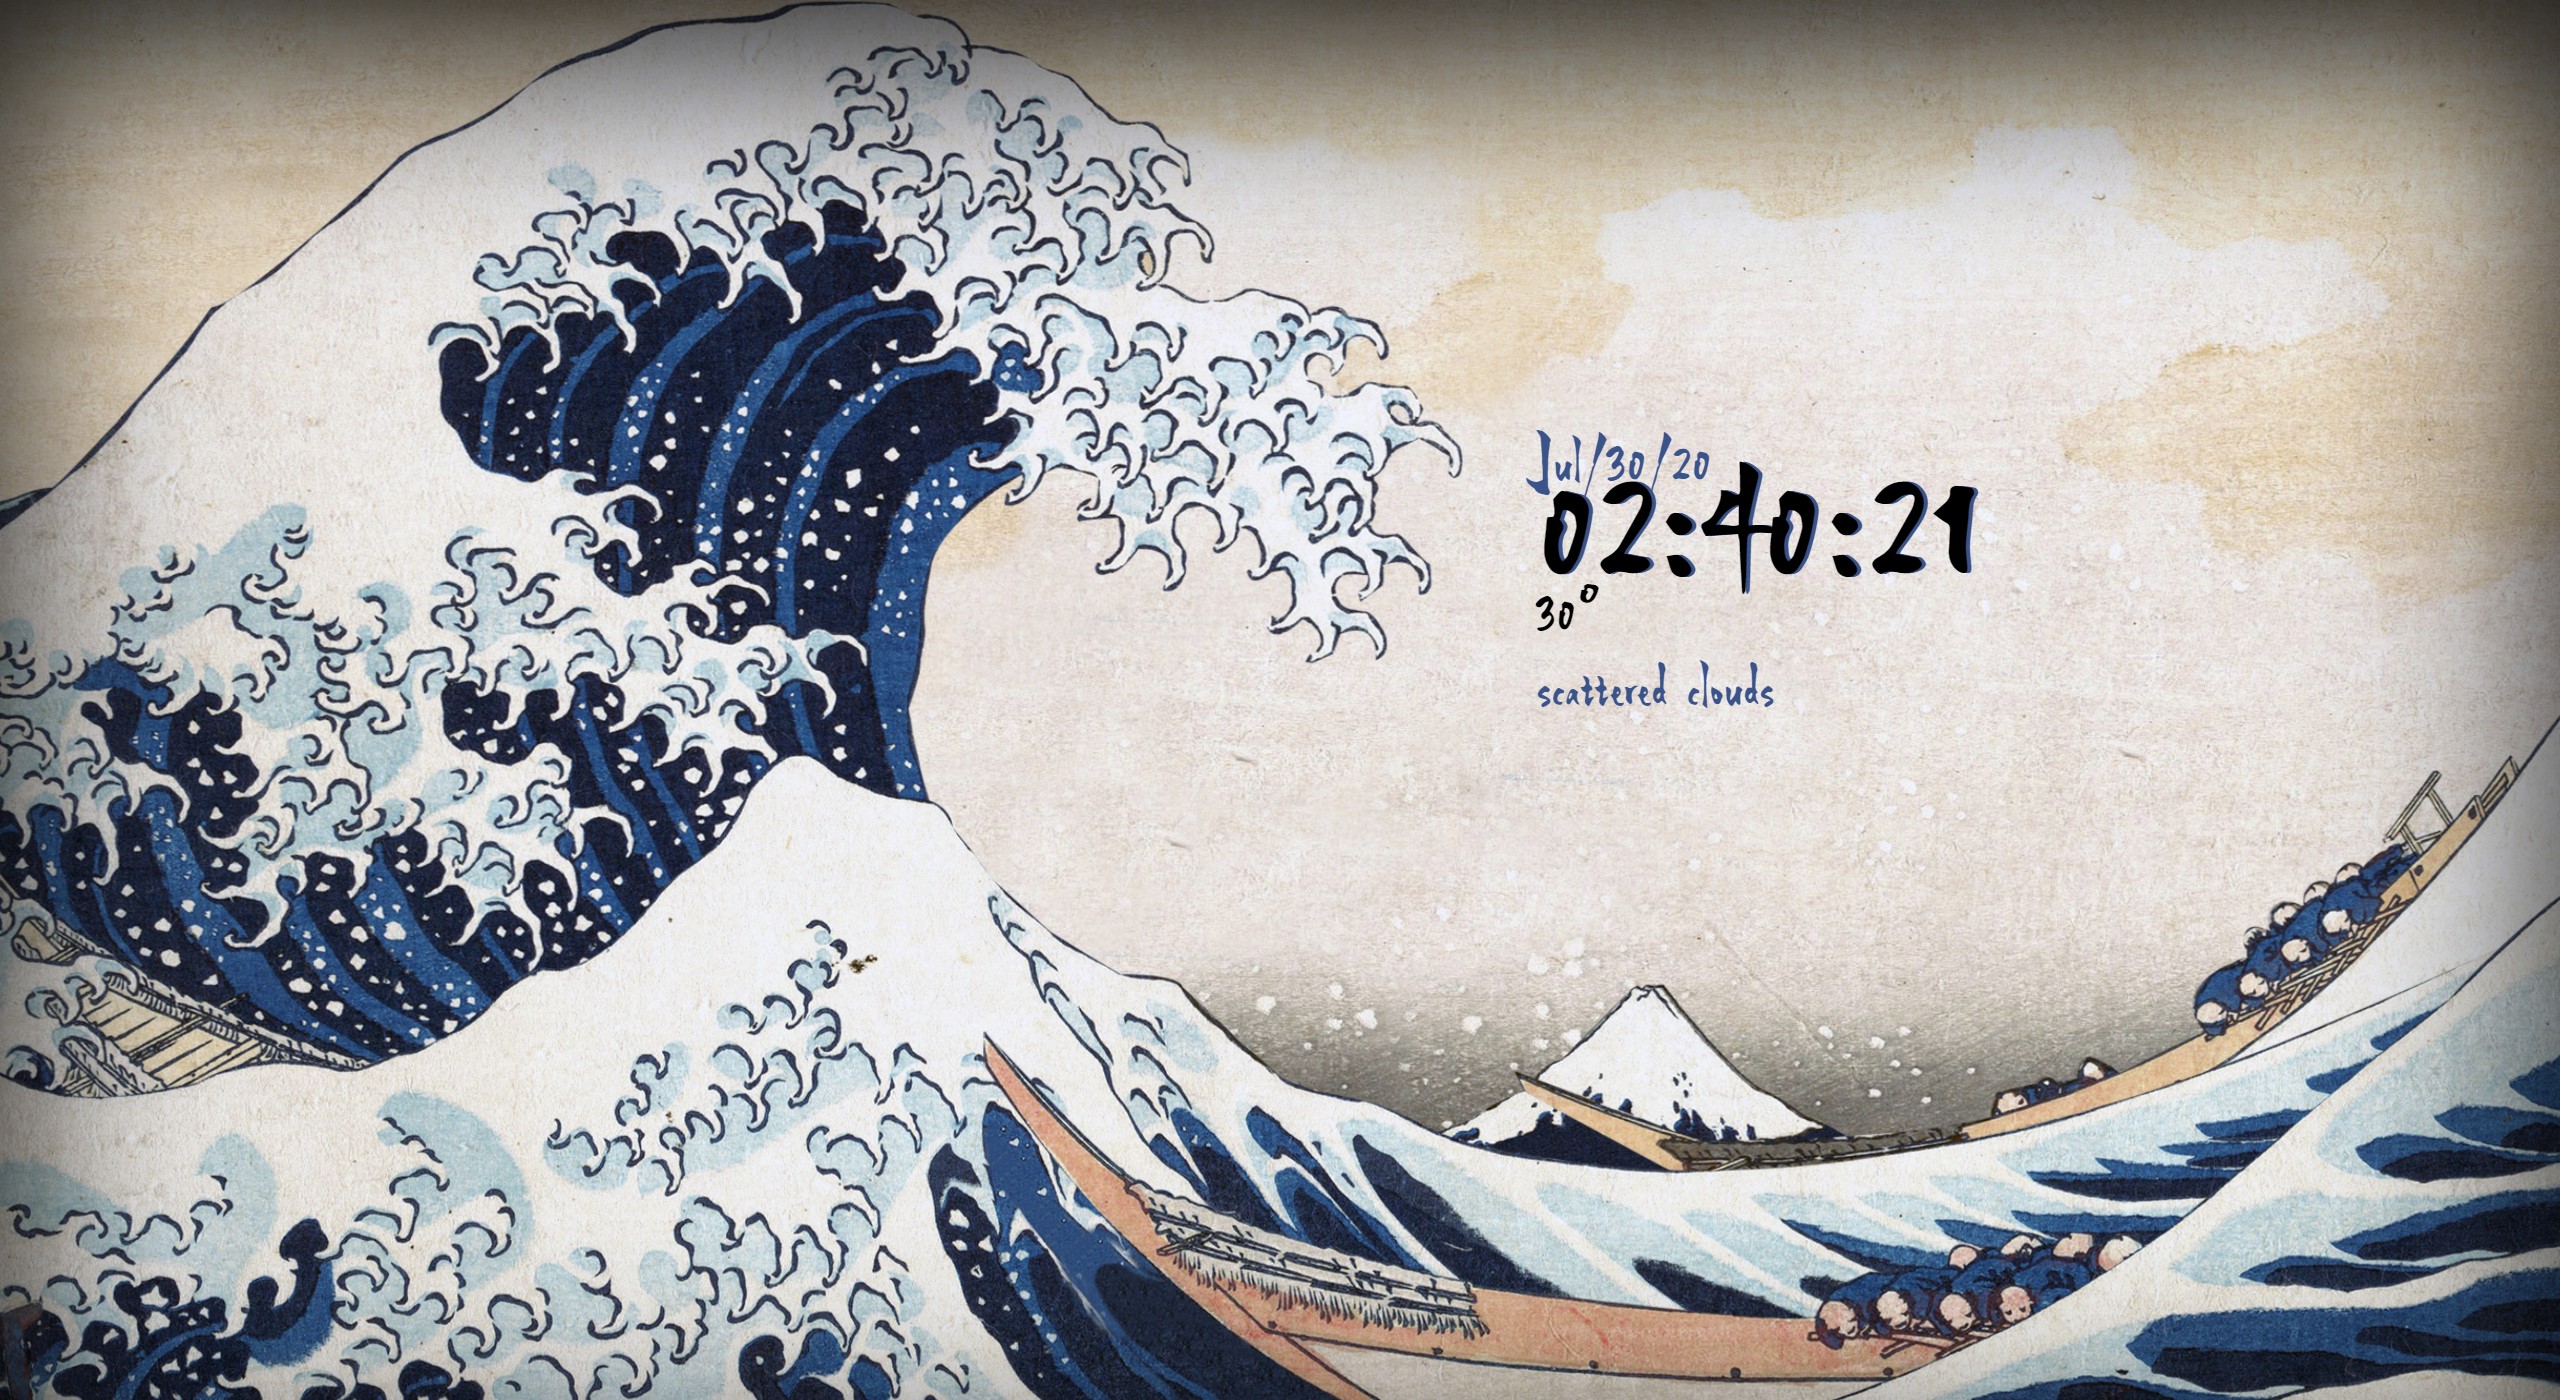 Microsoft lively wallpaper. Японские волны обои. Обои для Lively Wallpaper. Большая волна в Канагаве черепа. Большая волна в Канагаве обои.